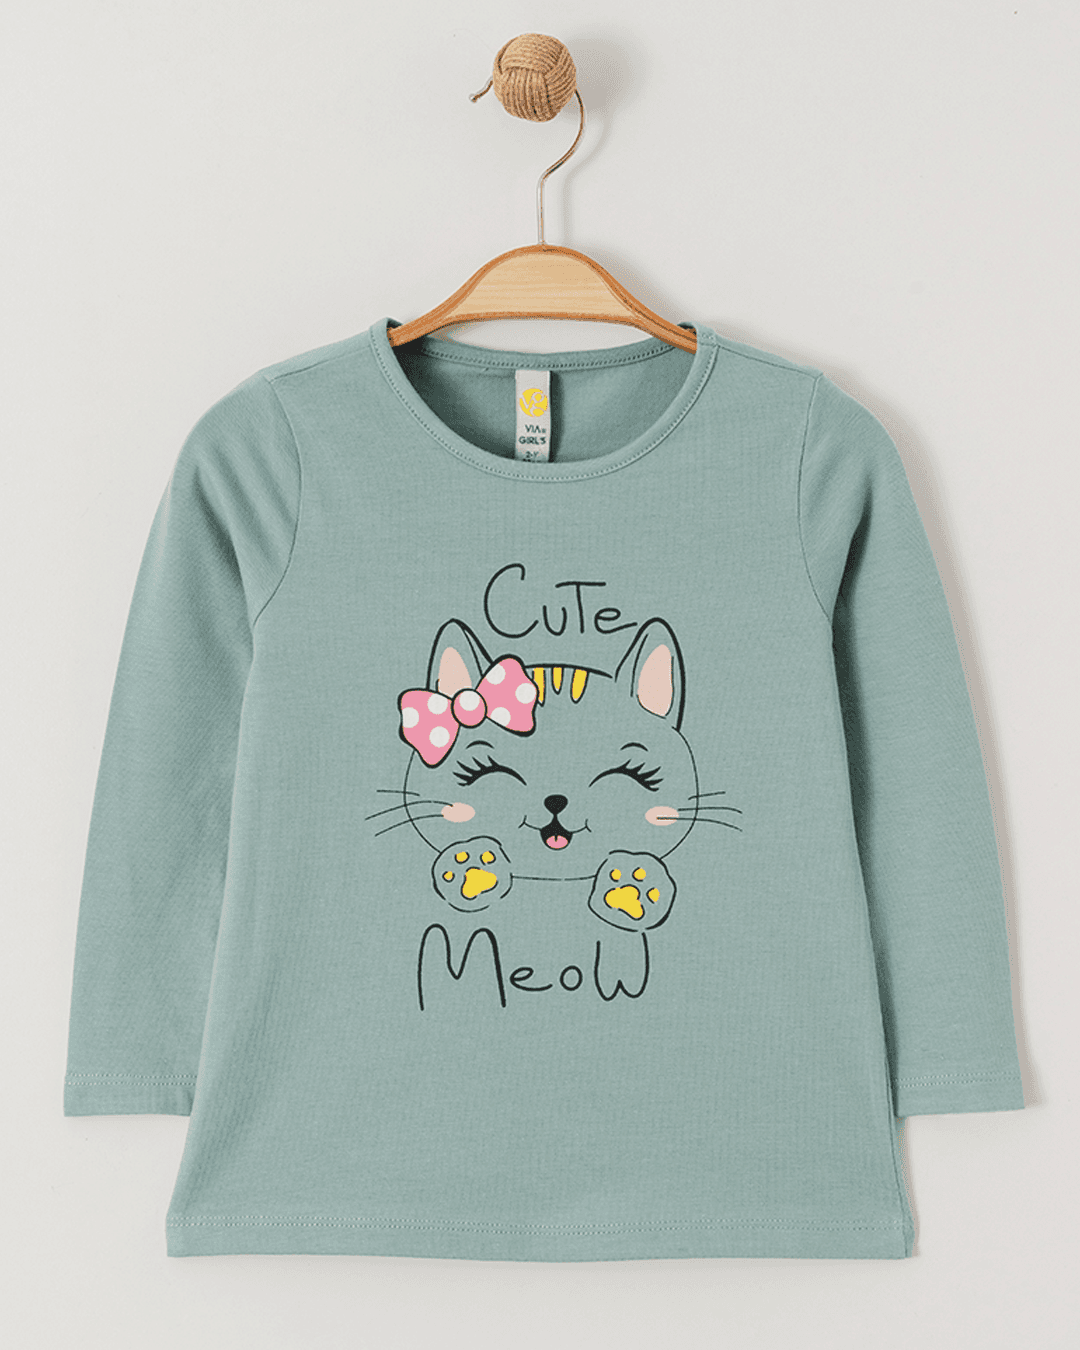 VIA GIRLS Majica za devojčice Cute Meow, Zelena